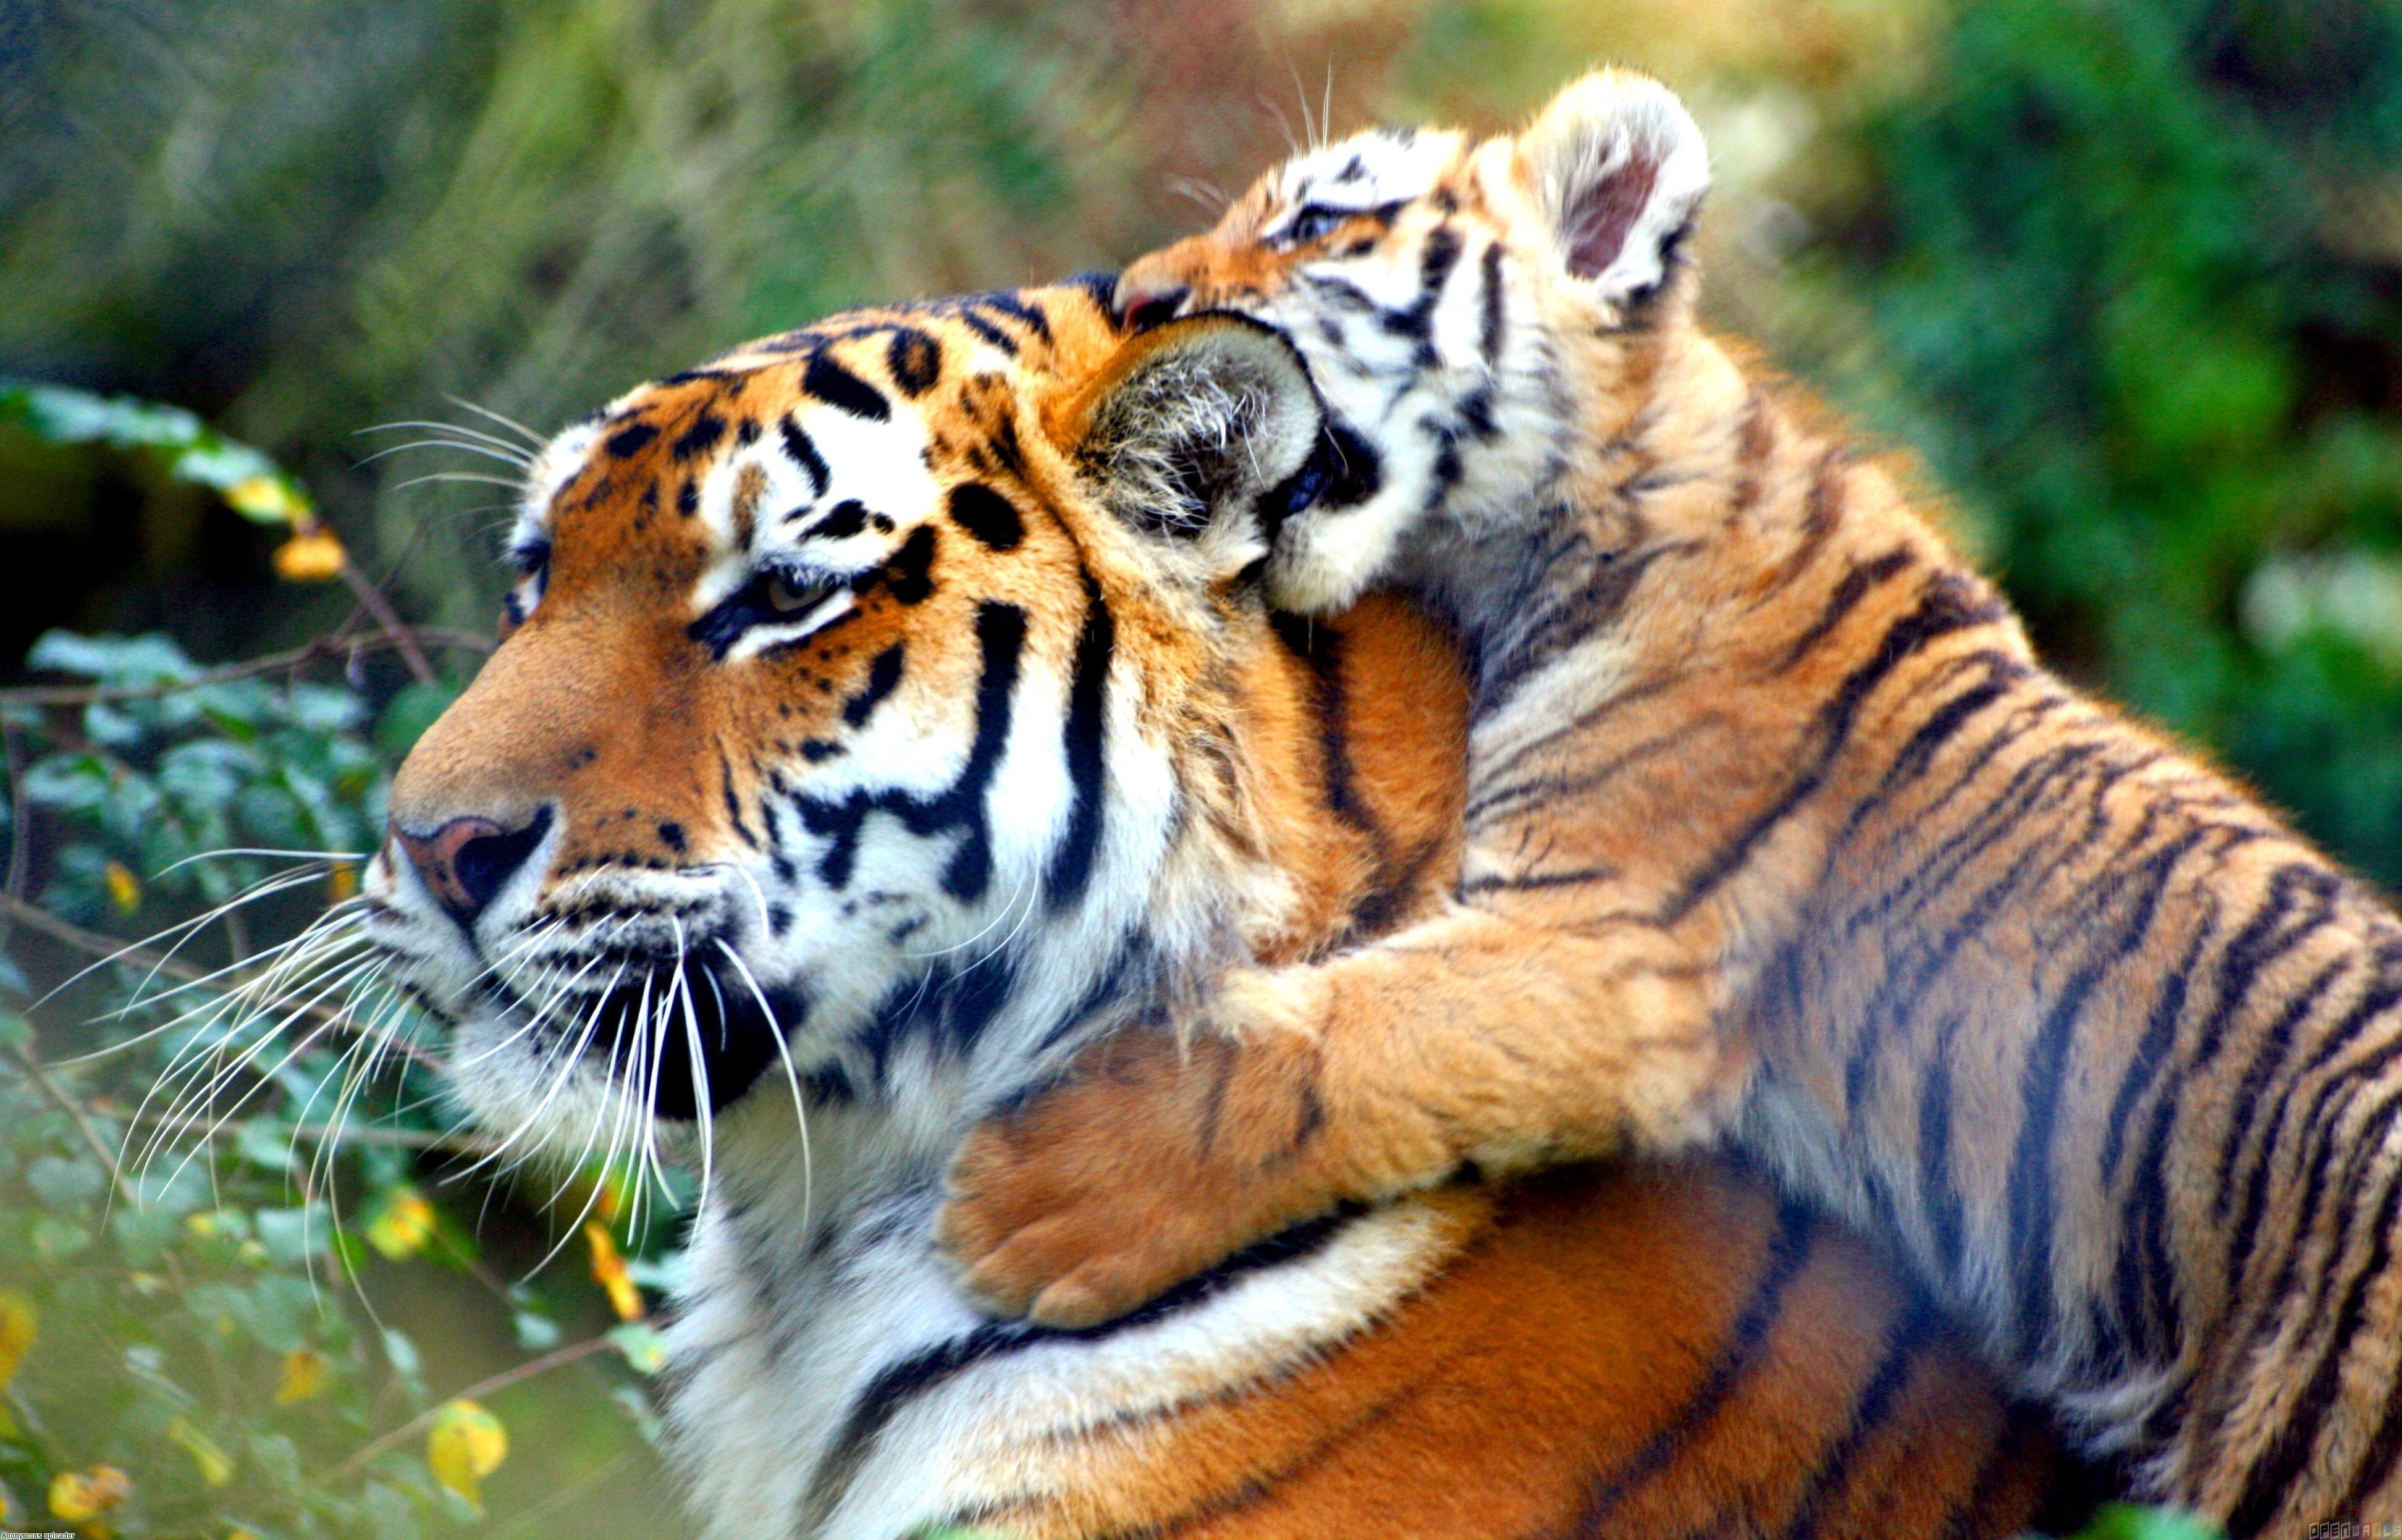 General 3888x2493 animals tiger cats big cats closeup fur whiskers blurred